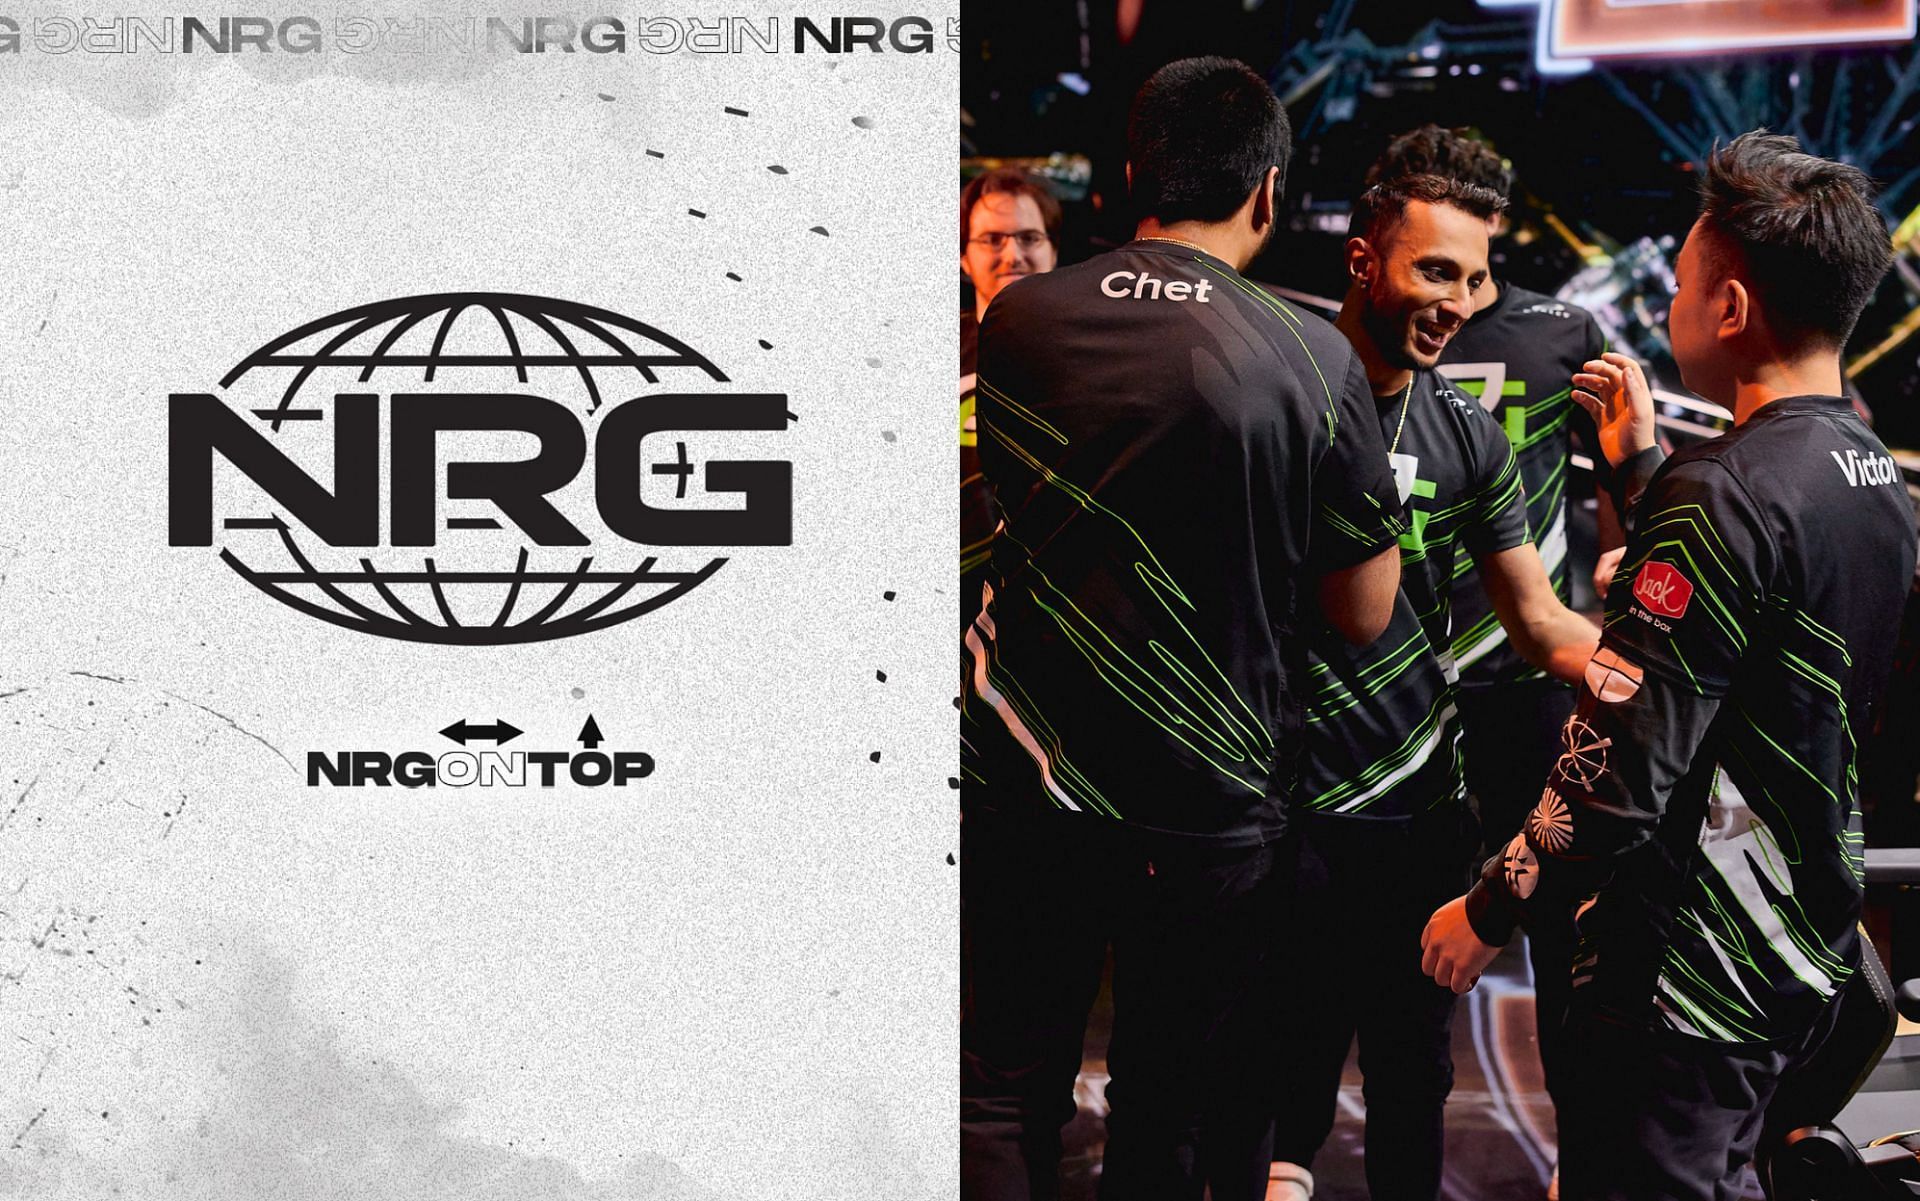 NRG is rumored to sign OpTic Gaming members (Image via Sportskeeda)